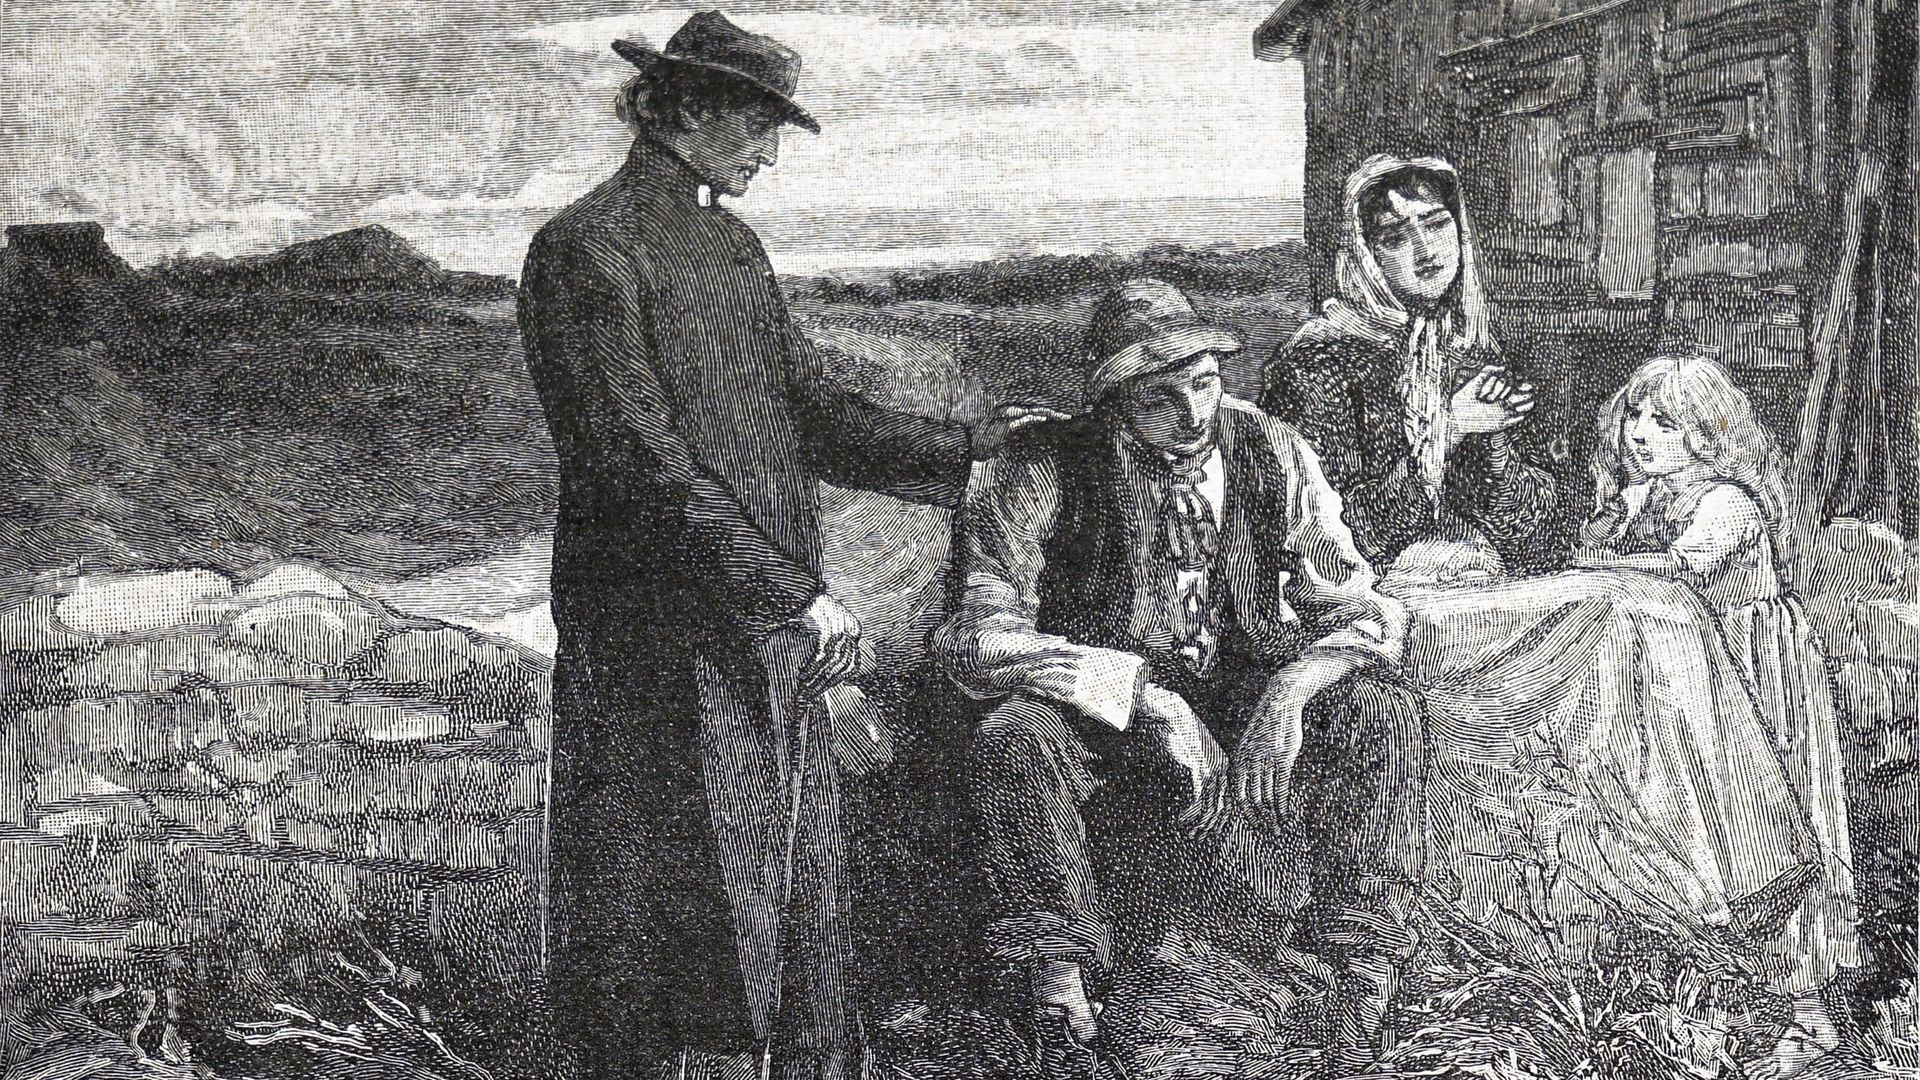 Image d’illustration : le père Théobald Mathew réconforte une famille victime de la famine lors de la crise de la pomme de terre dans les années 1840.